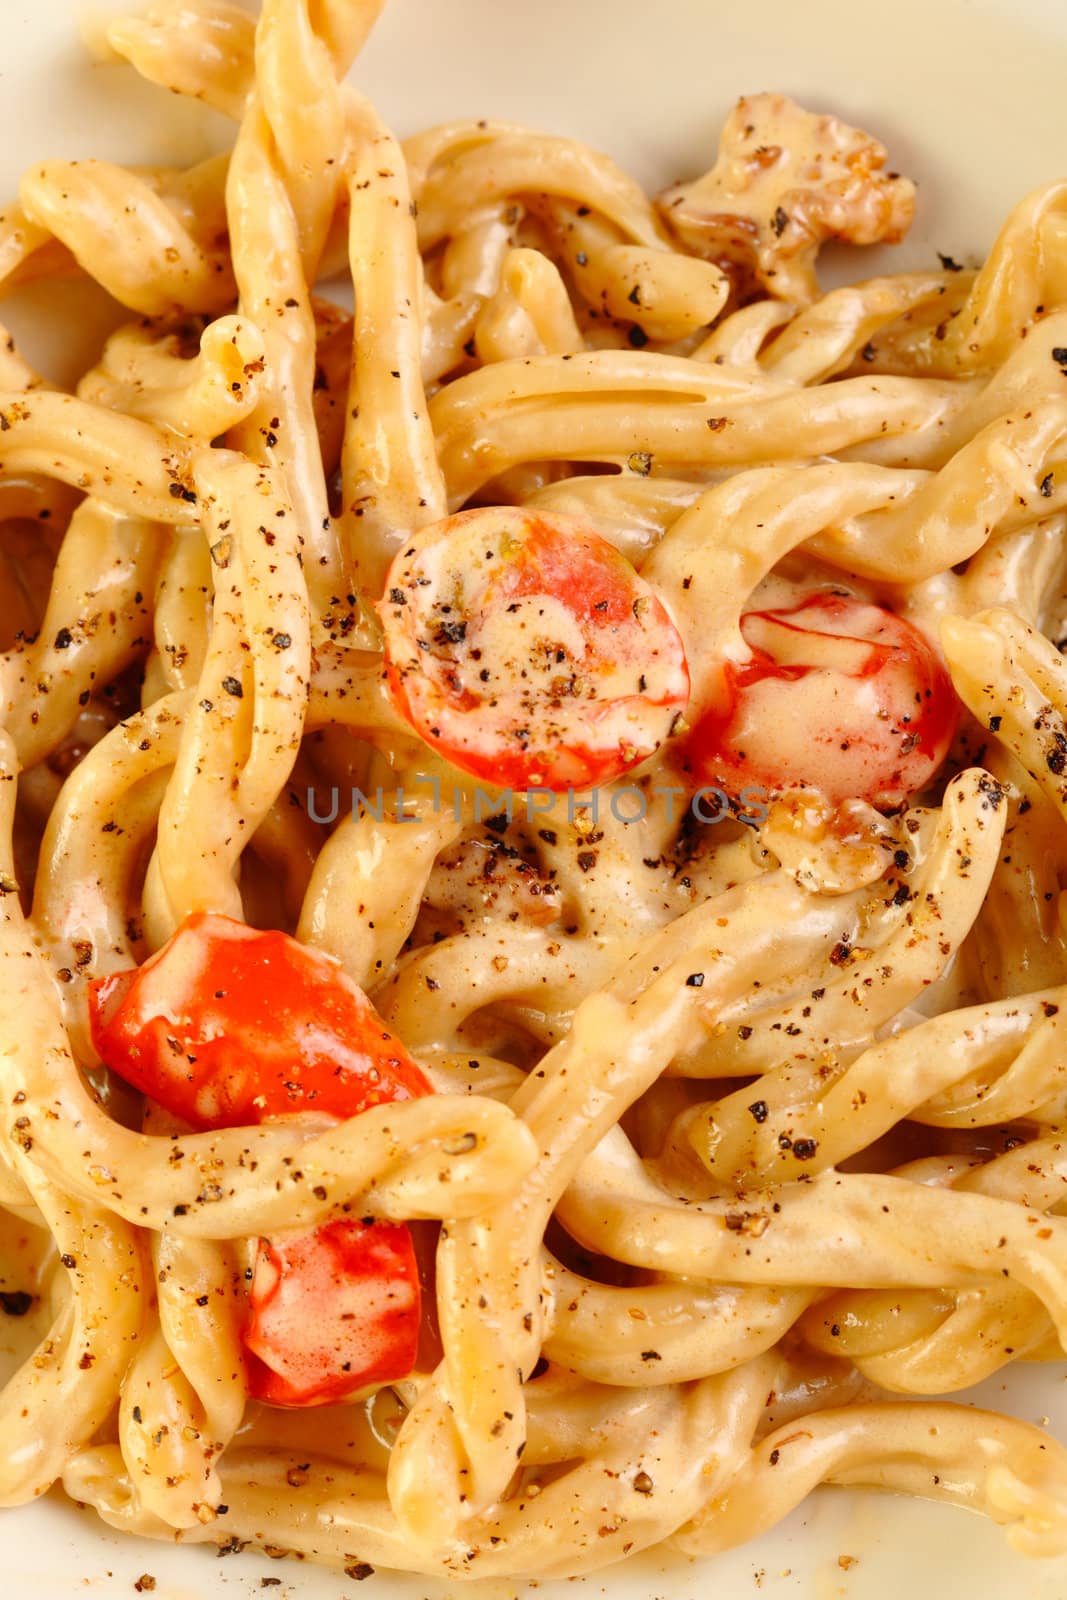 Fresh handmade pasta strozzapreti by shamtor